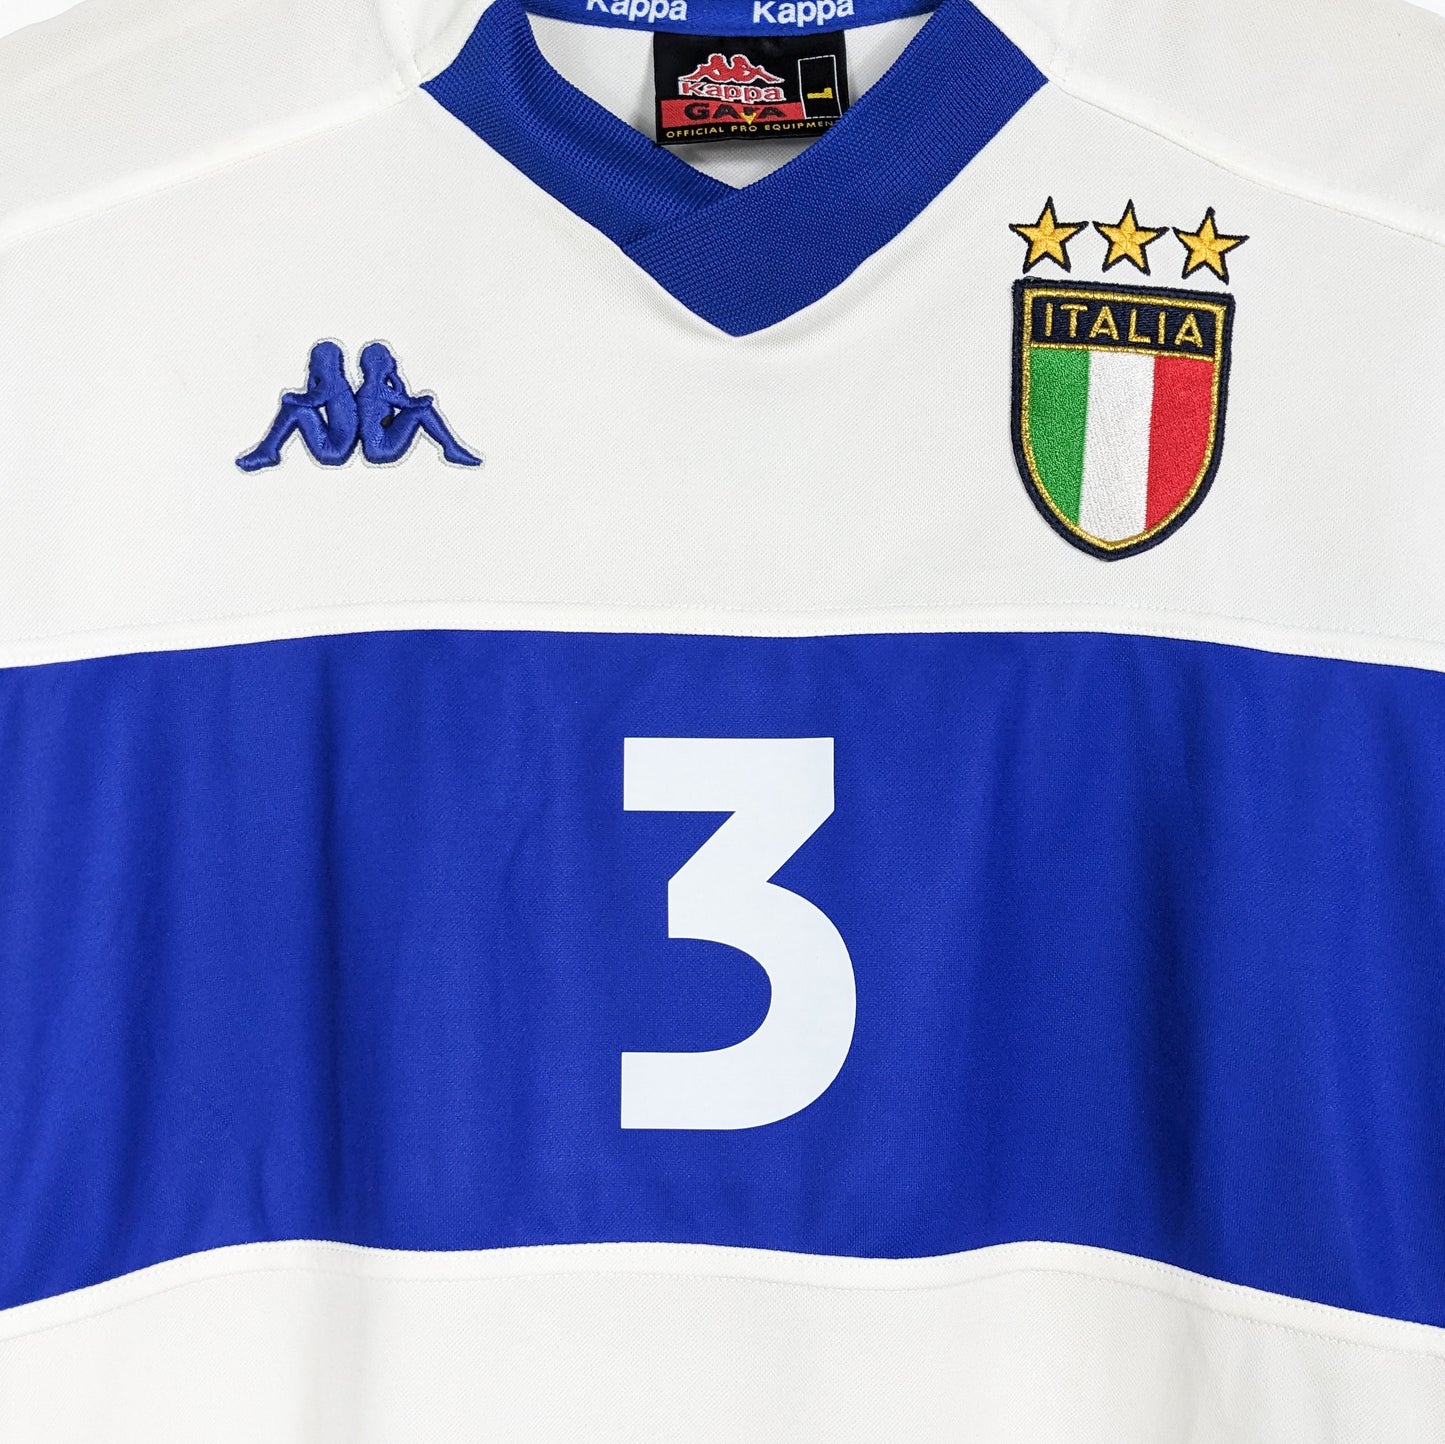 Authentic Italy 1999/2000 Away - Maldini #3 Size L